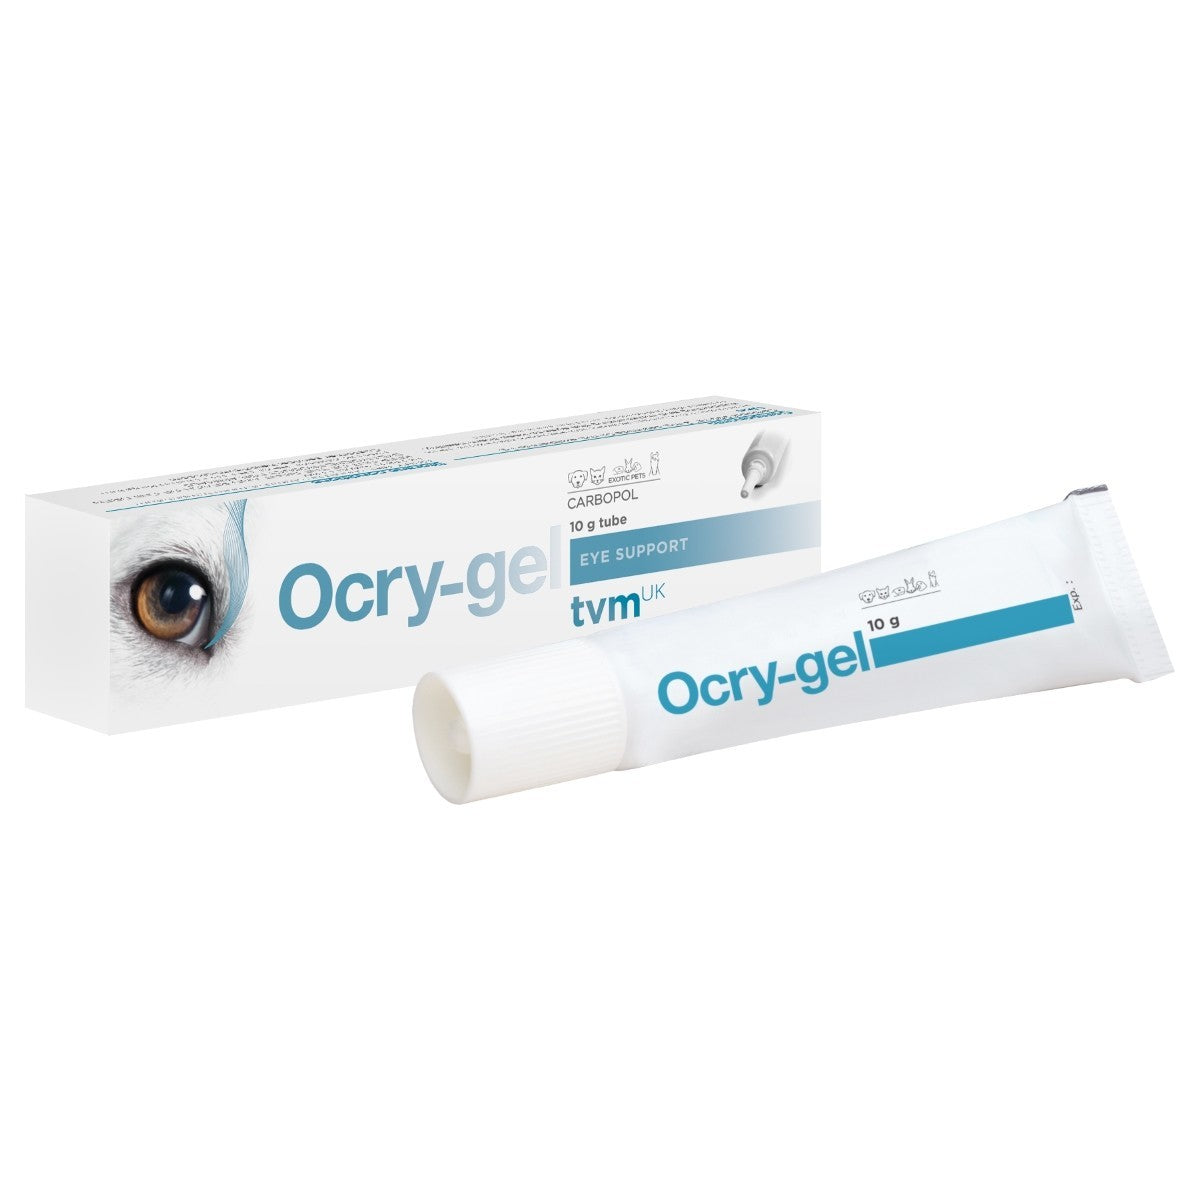 Ocry-gel Eye Gel